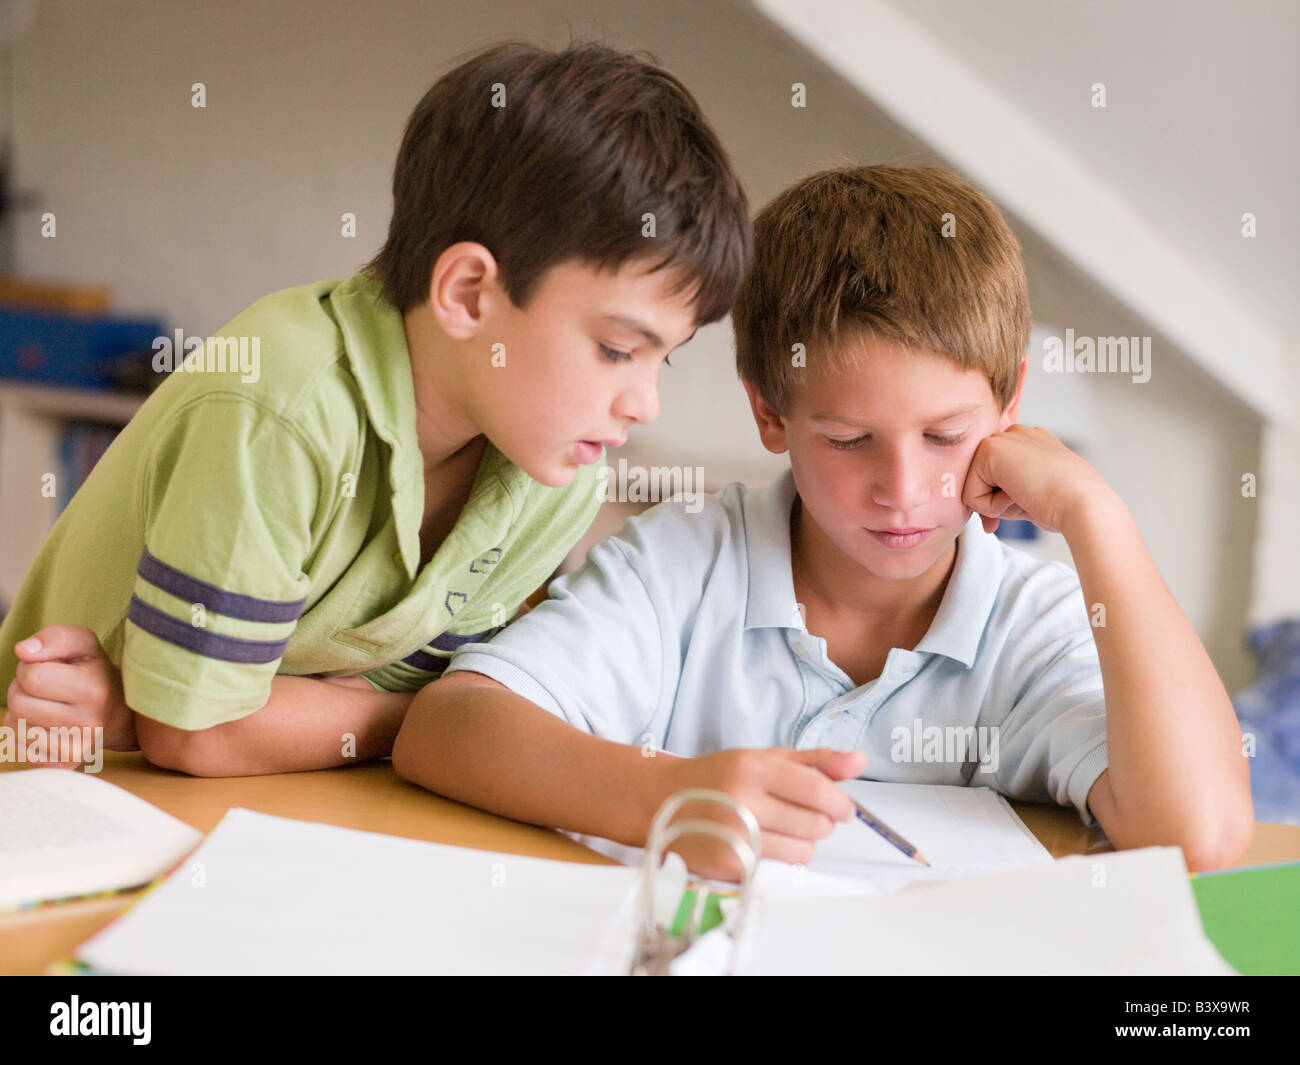 Брат помогает уроки. Делают домашнее задание два мальчика. Подросток дома. Брат помогает делать уроки. Братья делают уроки.